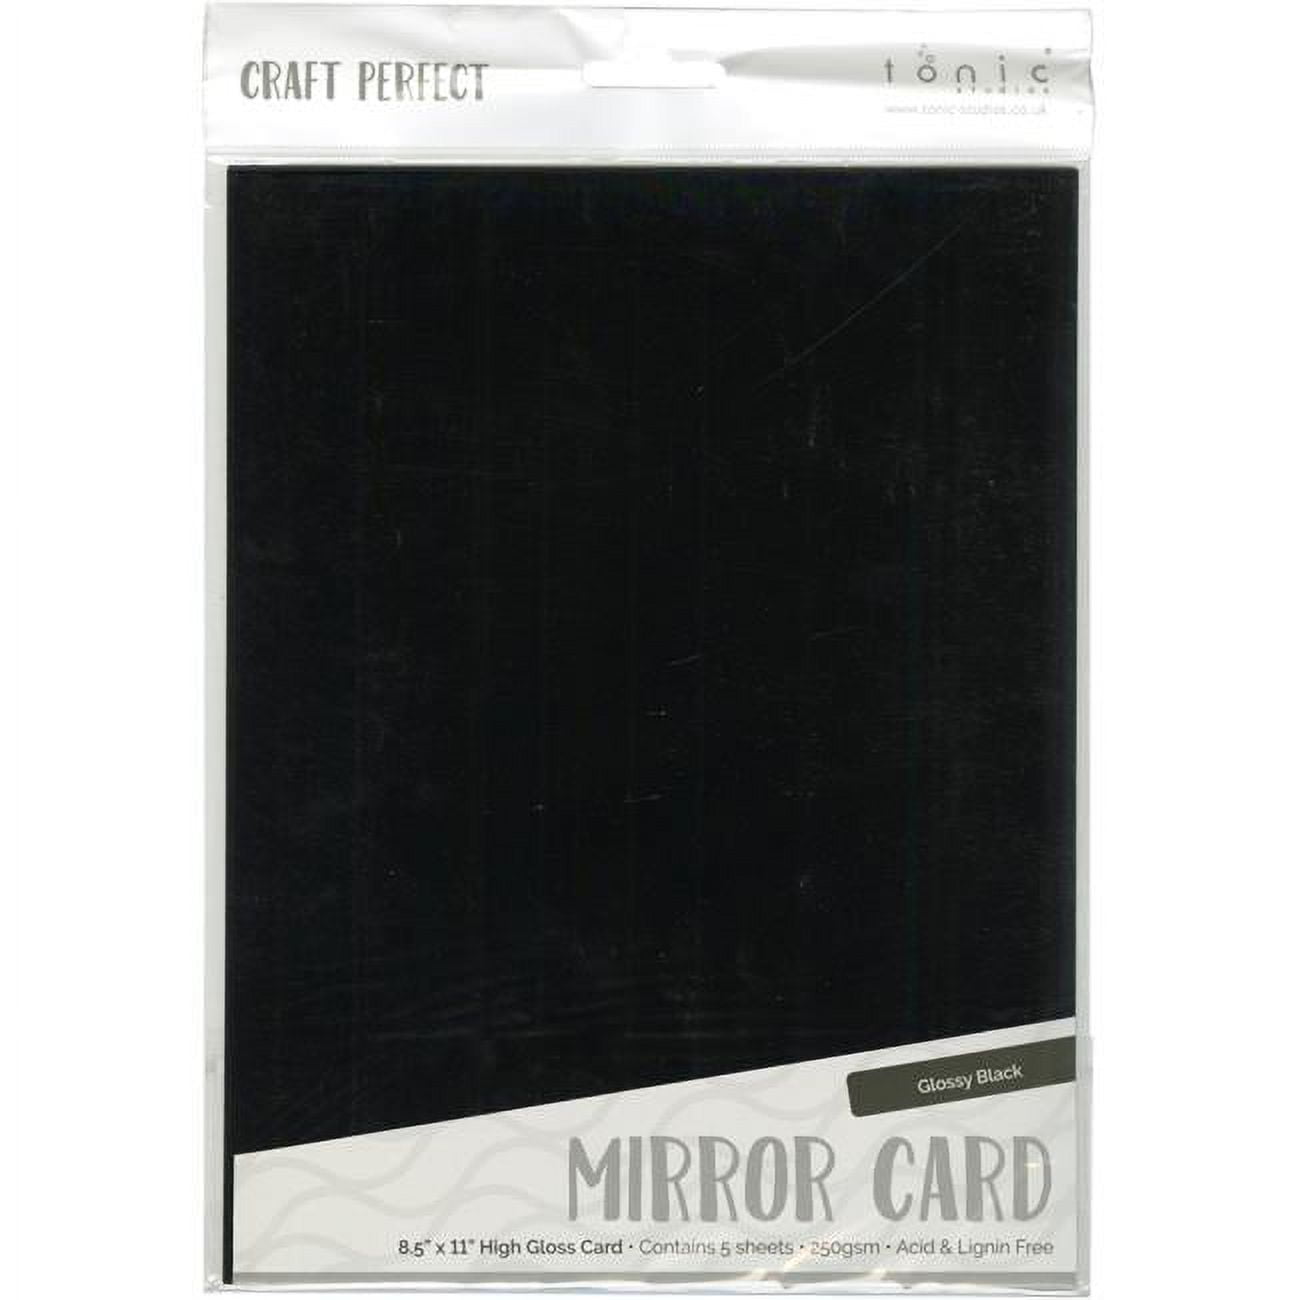 Pure White Card Stock - 12 x 12 LCI Felt 100lb Cover - LCI Paper